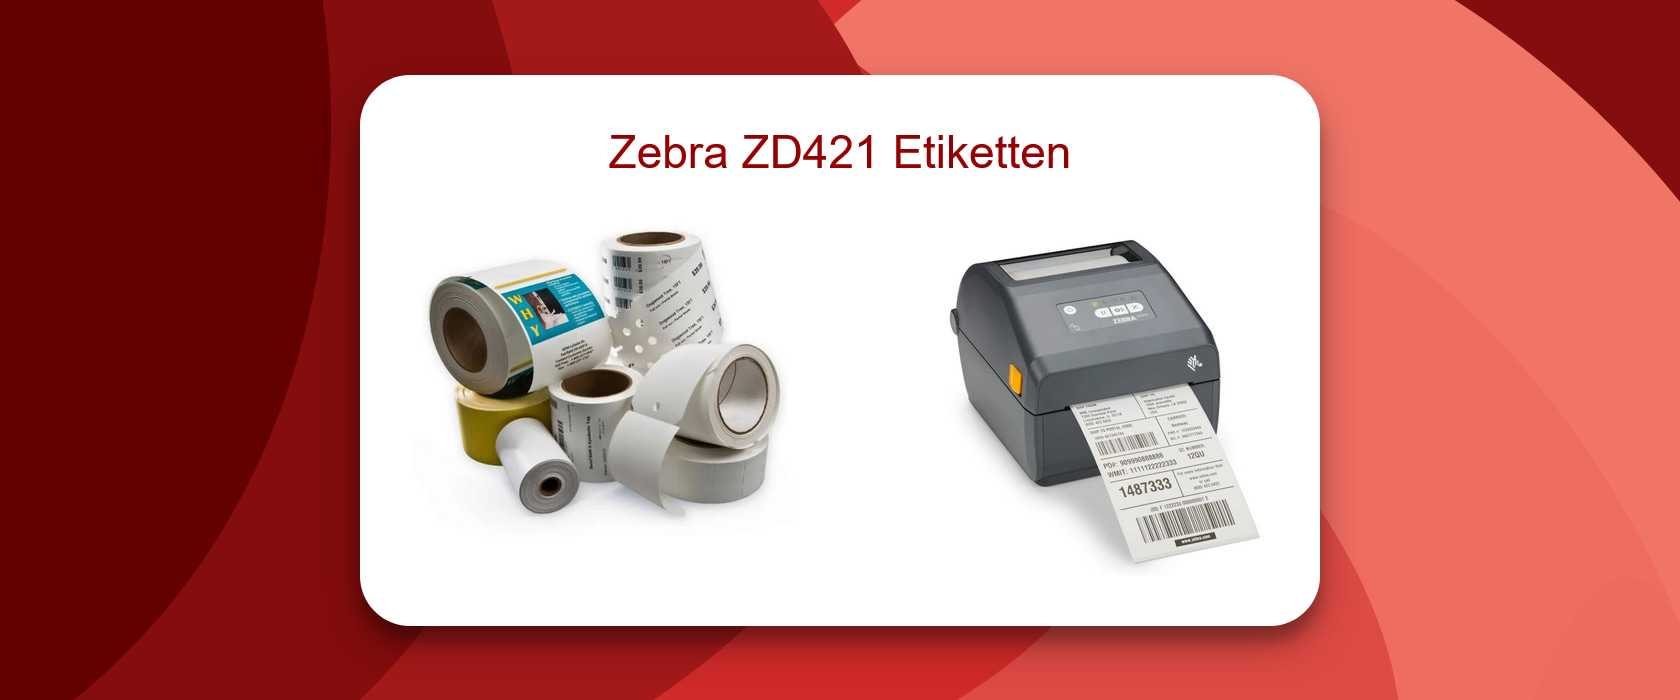 Zebra ZD421 Etiketten